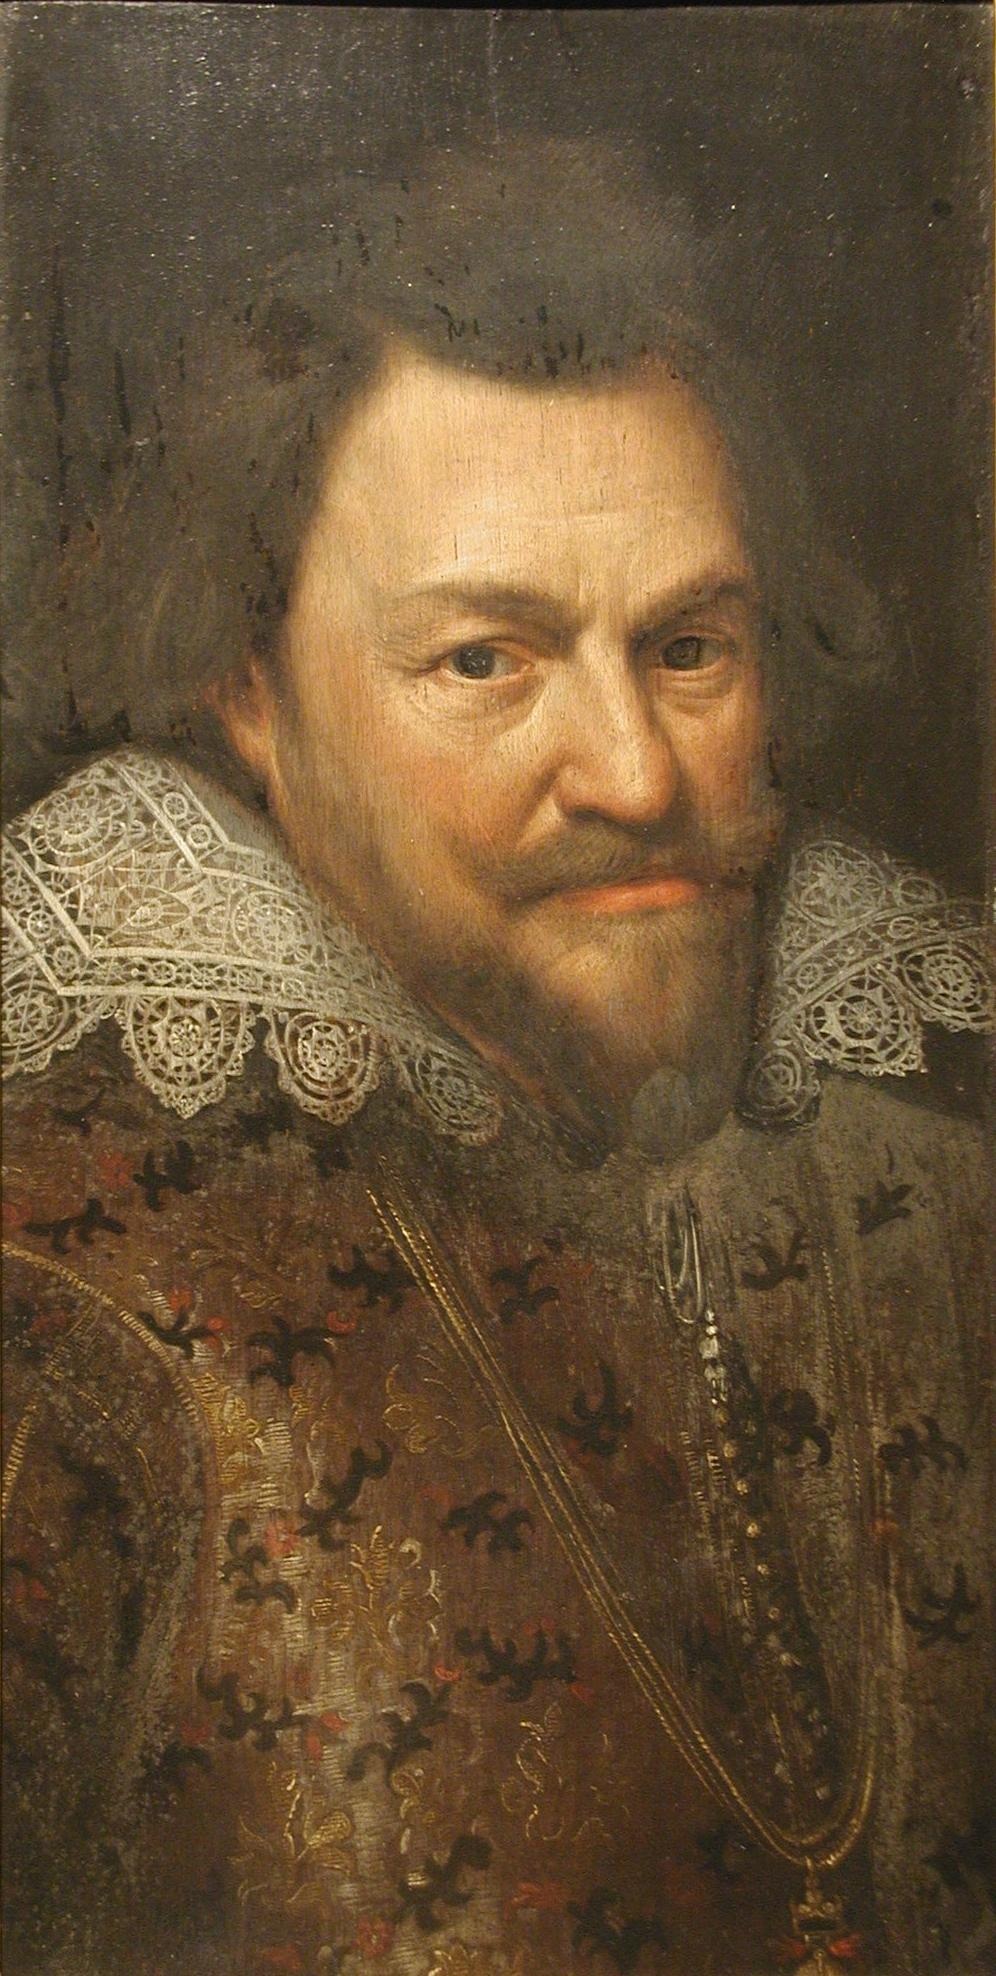 Porträt von Philipp Wilhelm von Oranien (Verein der Freunde und Förderer des Siegerlandmuseums e.V. CC BY-NC-SA)